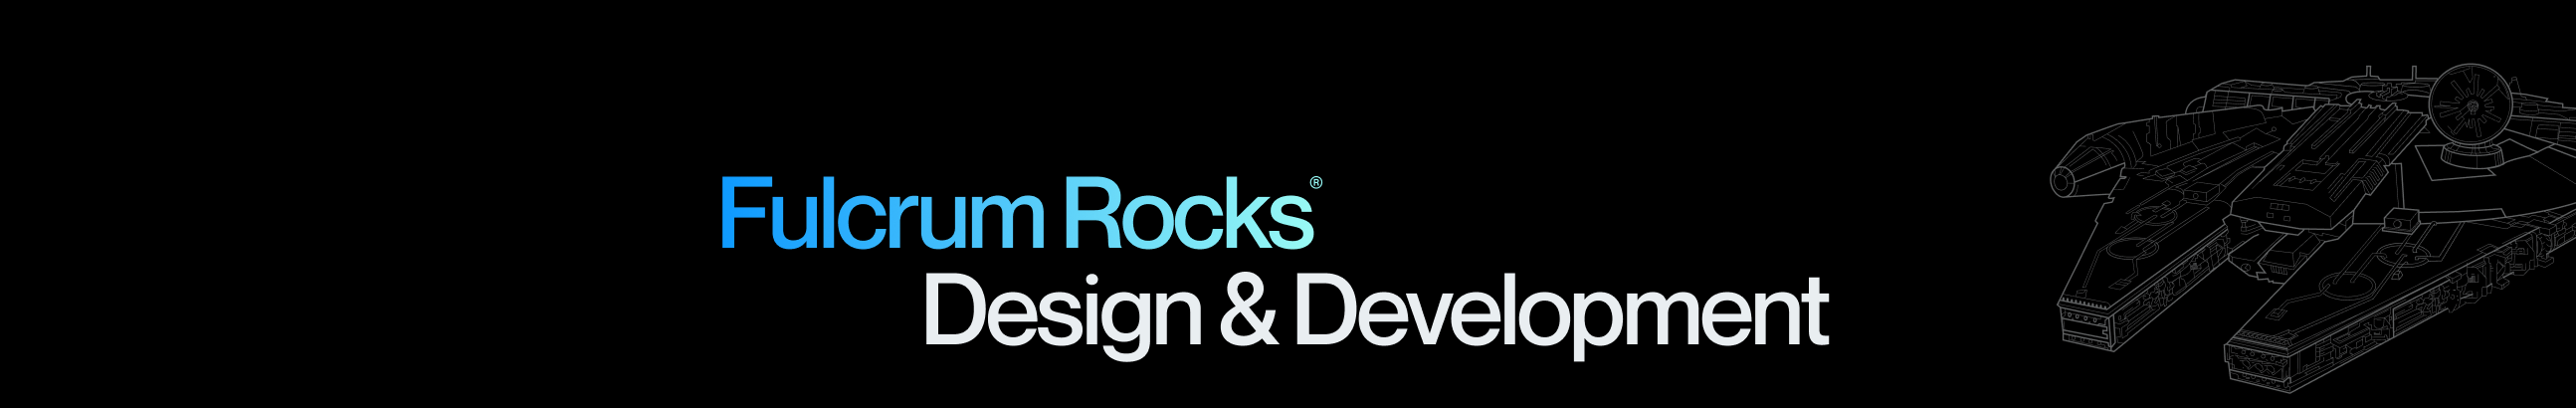 Fulcrum Rocks Studio's profile banner